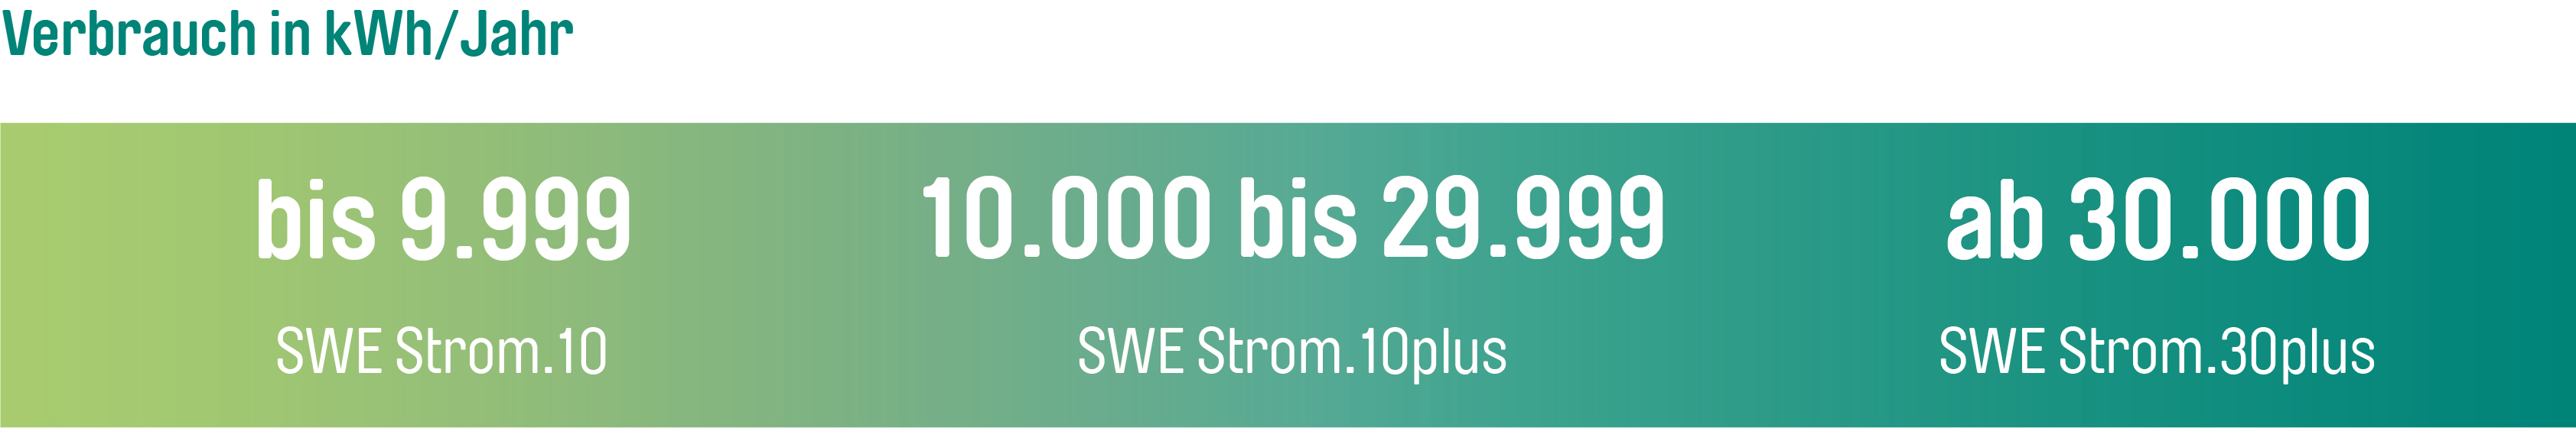 Bis 9.999 kWh erhält man den Tarif SWE Strom.10, von 10.000 bis 29.999 kWh Strom.10 plus und ab 30.000 kWh den Tarif SWE Strom.30 plus.